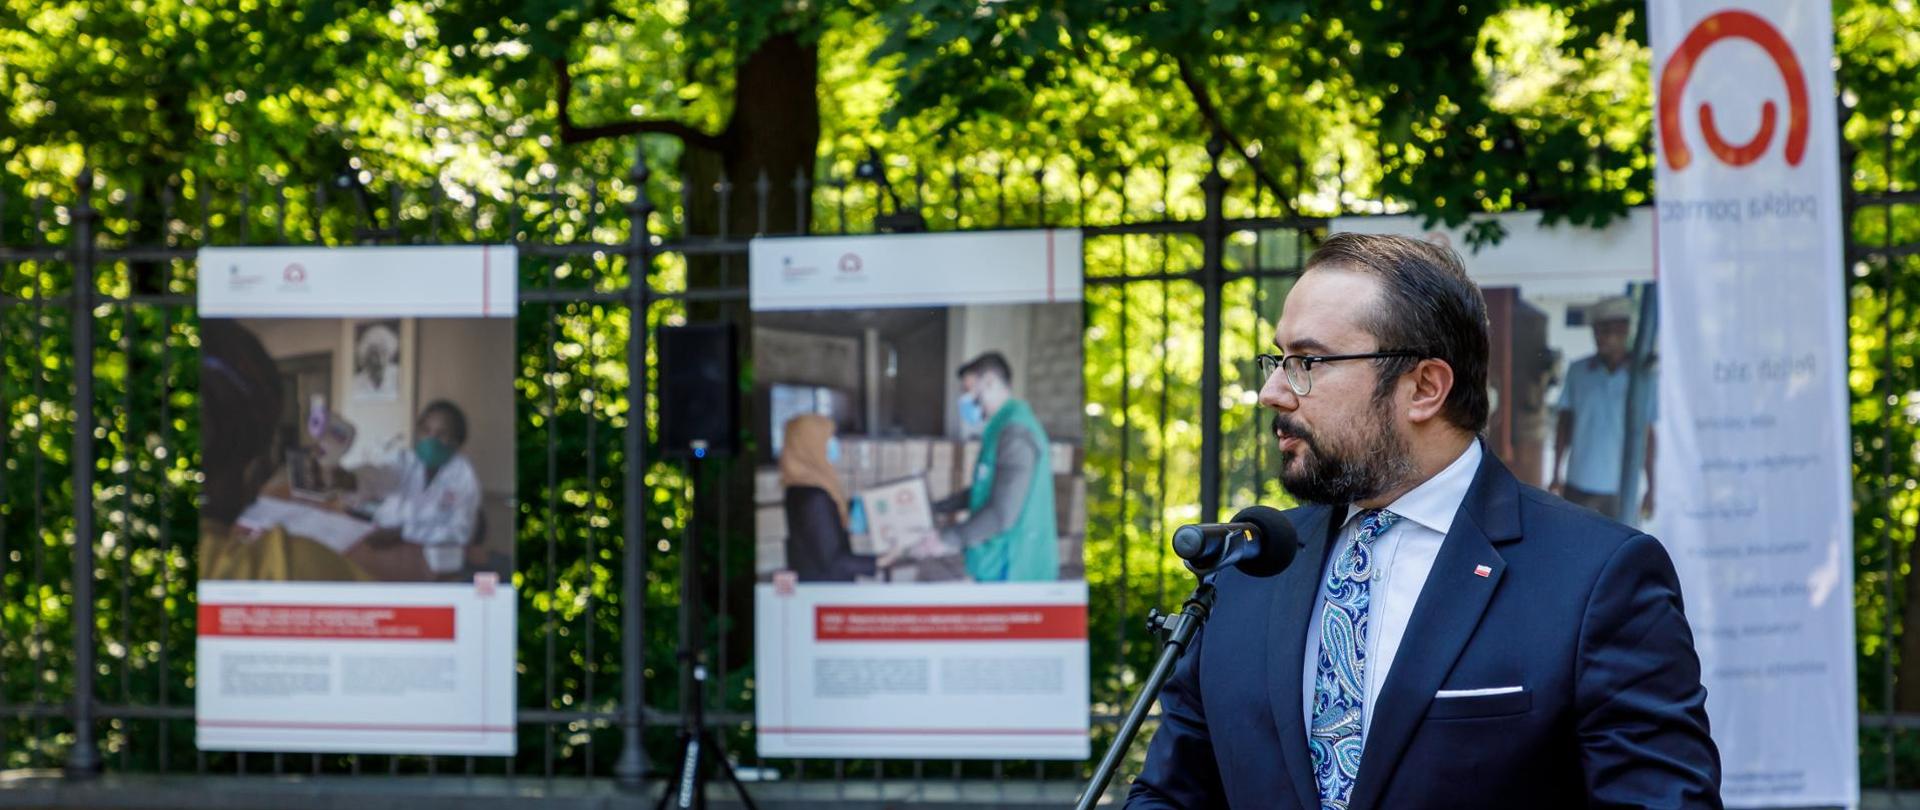 Minister Paweł Jabłoński otwiera wystawę - mężczyzna mówi do mikrofony, w tle na przęsłach ogrodzenia przymocowane są plansze wystawy zawierające zdjęcia oraz tekst